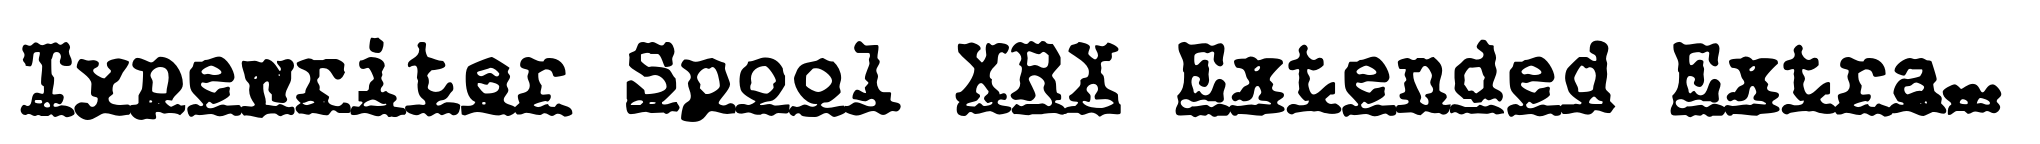 Typewriter Spool XRX Extended Extra Bold Italic image